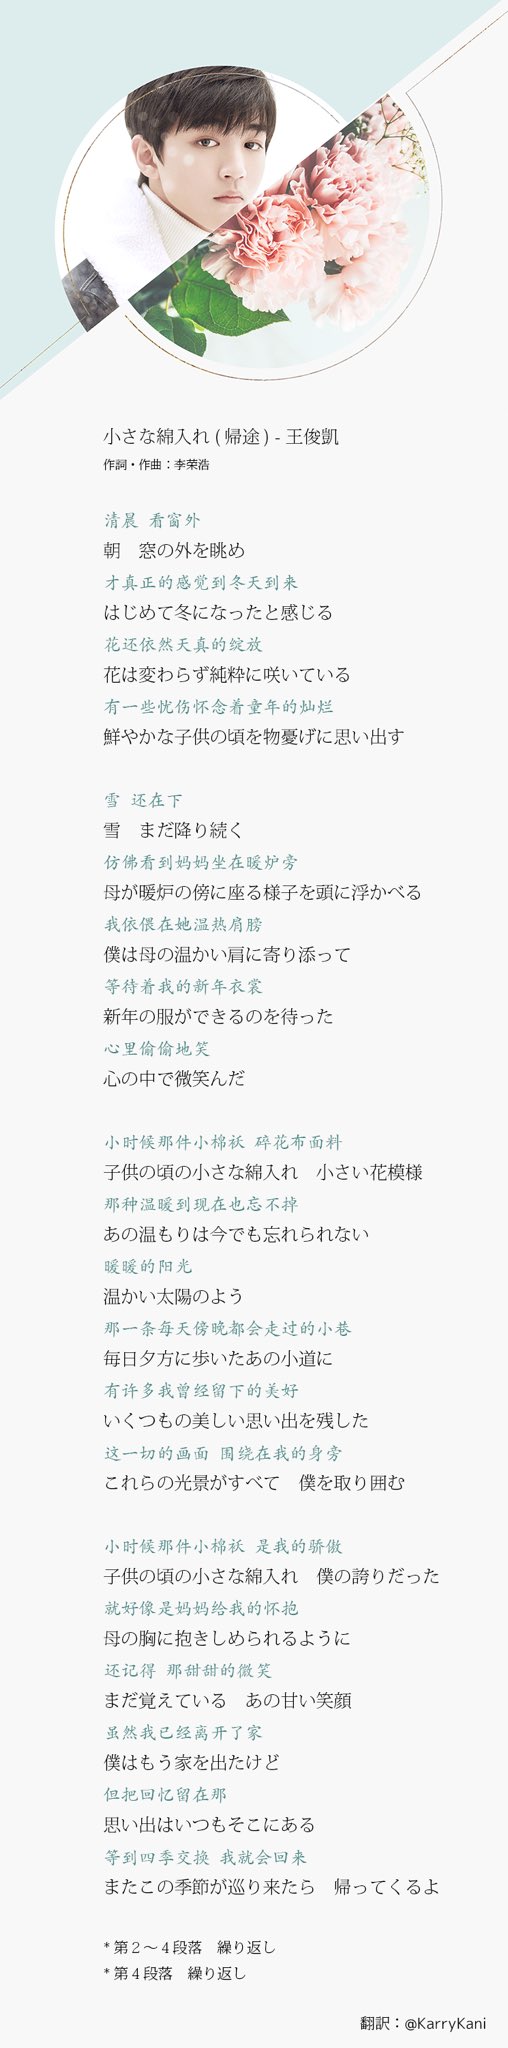 Karrykani 王俊凯のソロ曲 小棉袄 の歌詞を日本語に訳しました 母親と故郷への思いを語る歌です Line Musicでhomewardという英語のタイトルで検索すれば聞けますよ Youtubeにもあげられたけど音声が出ないので画像にしました わんじゅんかい